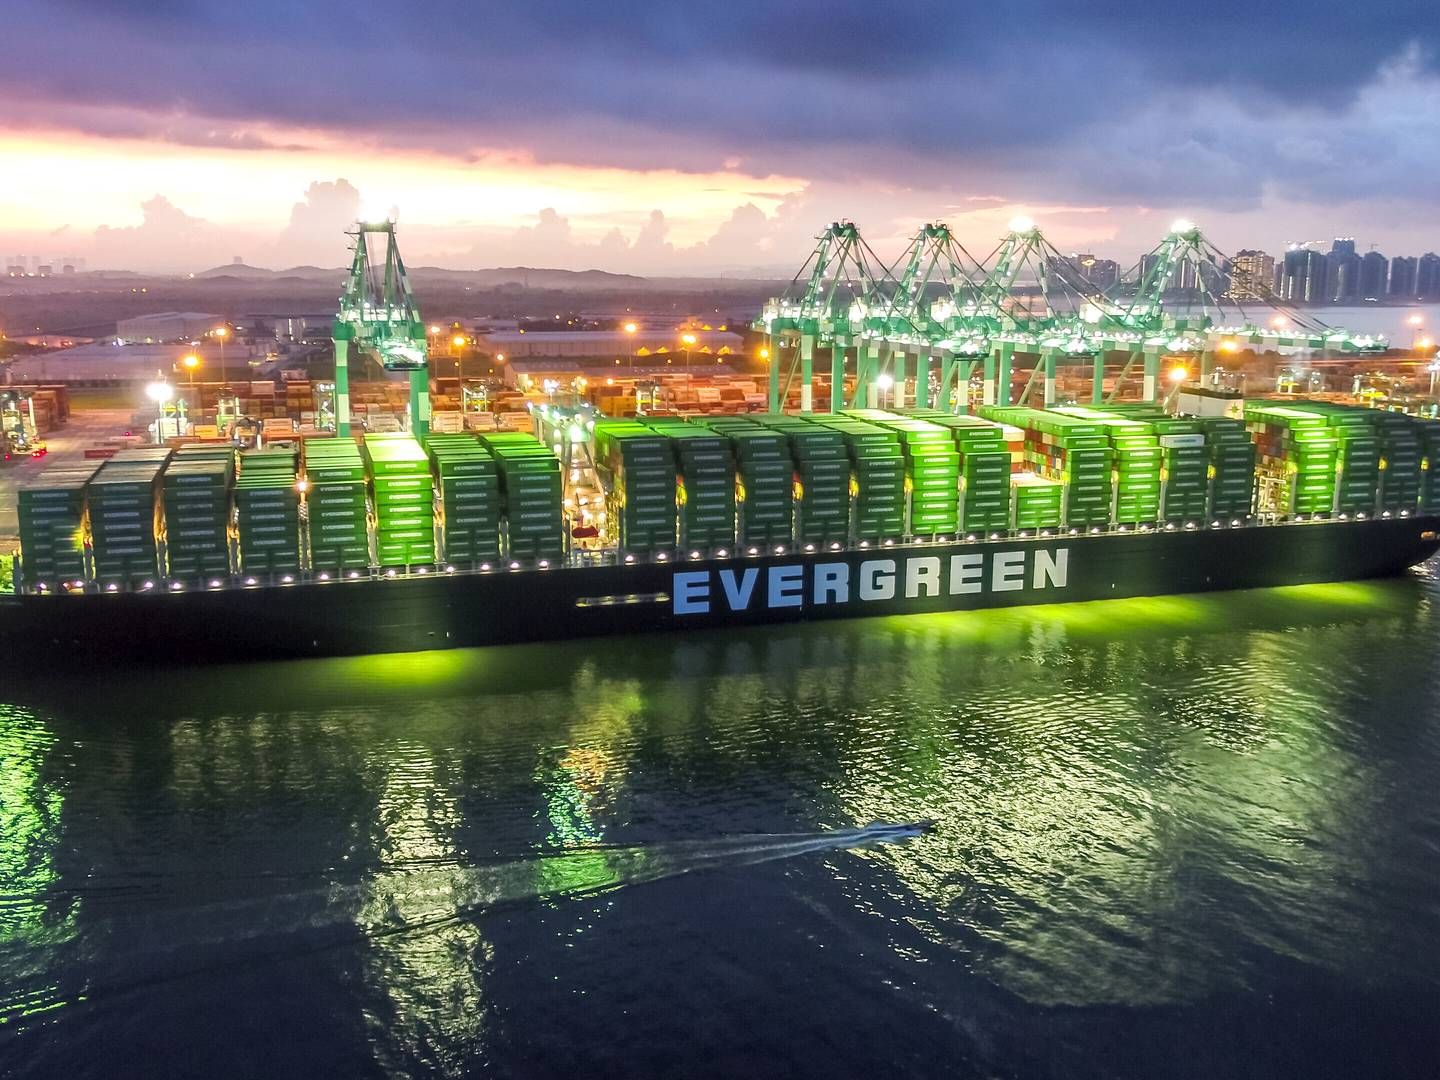 Det er blandt andet blokaden af Suezkanalen, der i foråret 2021 blev forårsaget af Evergreen-skibet Ever Given, der stødte på grund og lå fast i seks dage, som lægger til grund for de store forsyningsproblemer globalt. | Foto: PR / Evergreen